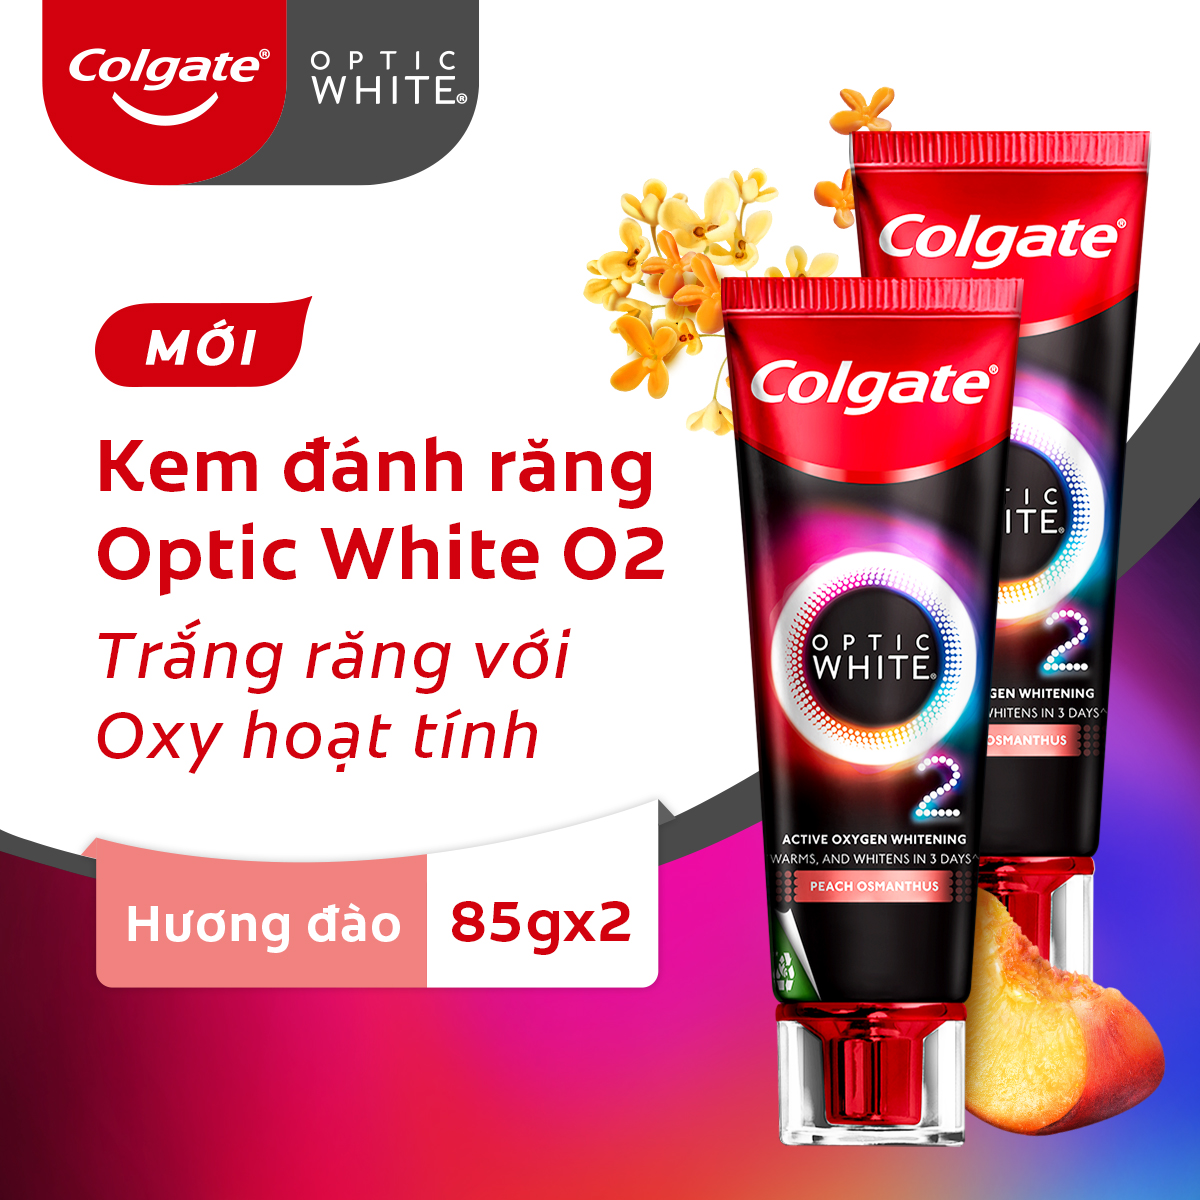 Bộ 2 Kem Đánh Răng Colgate Optic White O2 Oxy Hoạt Tính trắng răng 3 ngày 85g Hương đào